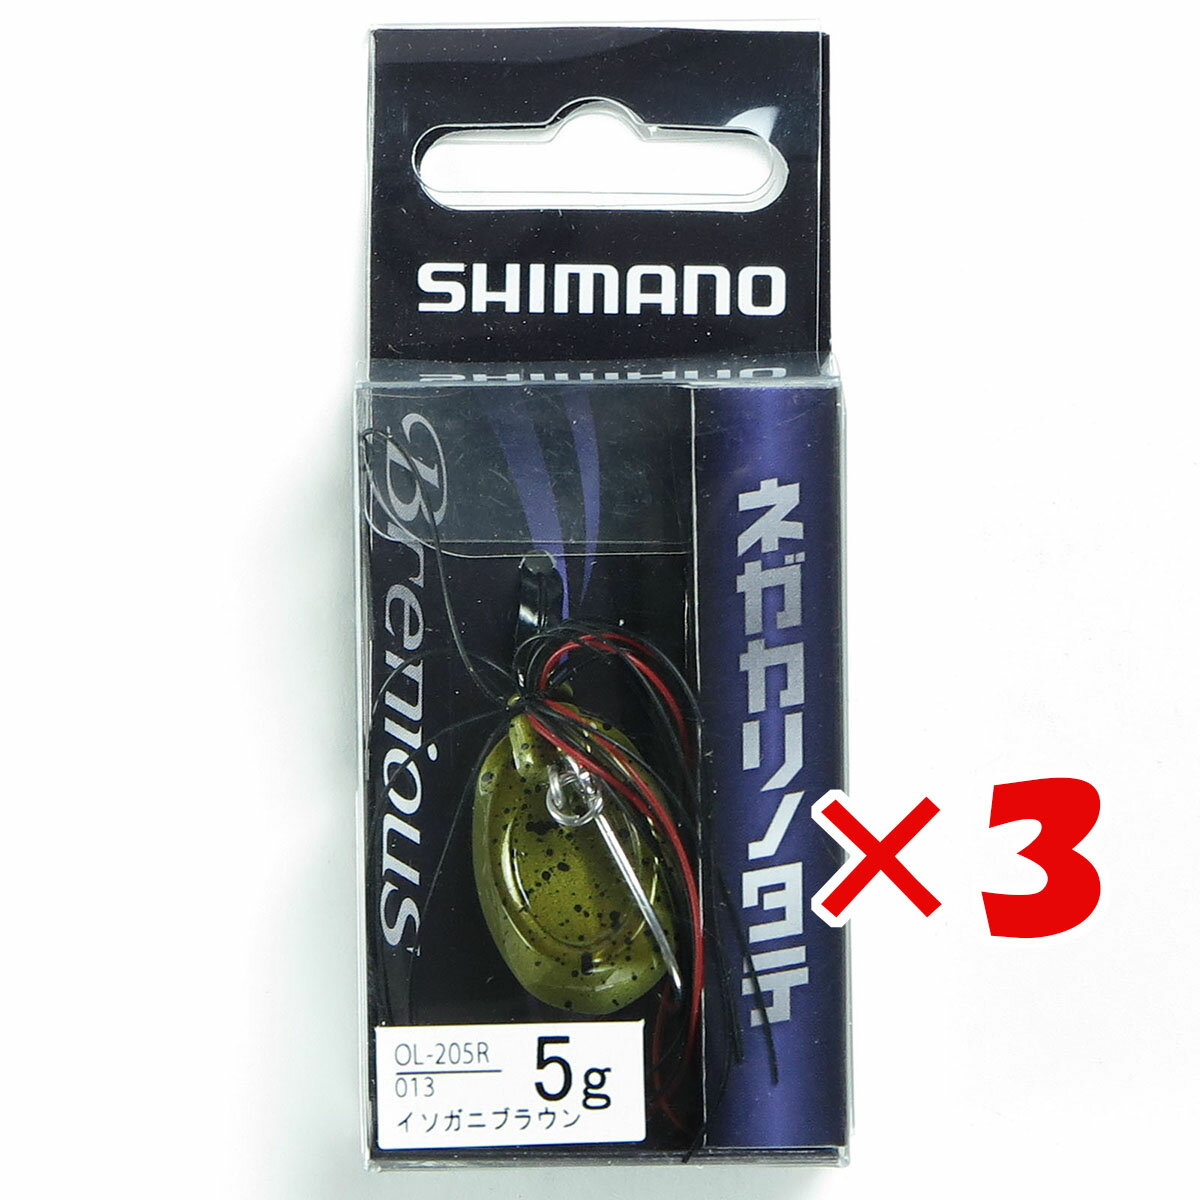  「 シマノ SHIMANO Brenious ネガカリノタテ 5g 013 イソガニブラウン OL-205R 」  釣具 釣り具 釣り用品